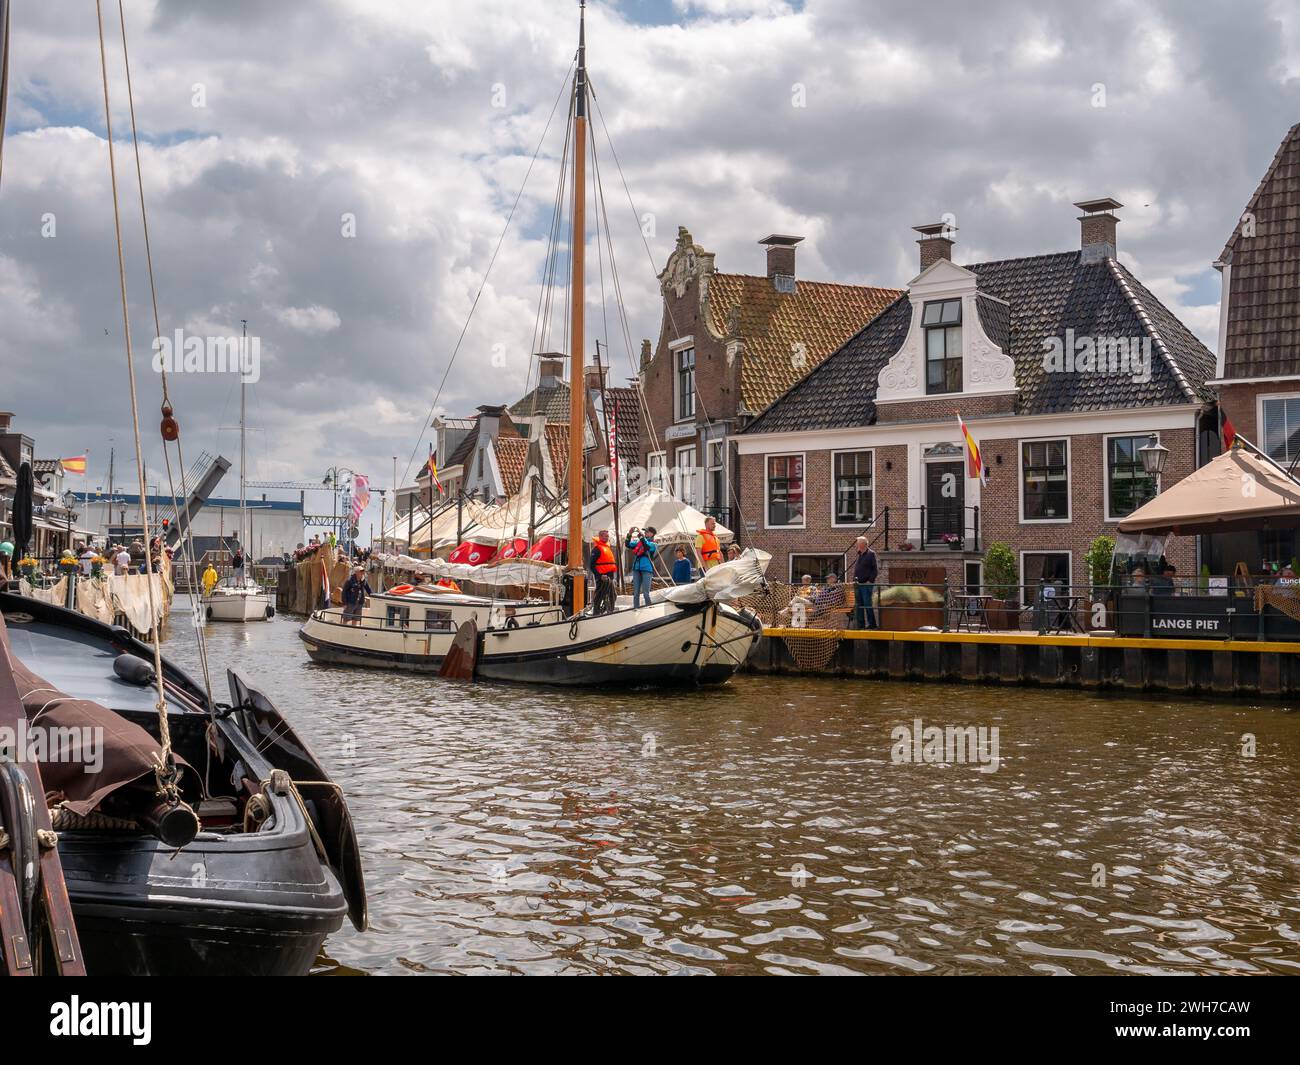 Segelboote fahren im Het Dok Kanal in der Nähe des Kais Langestreek in der Altstadt von Lemmer, Friesland, Niederlande Stockfoto